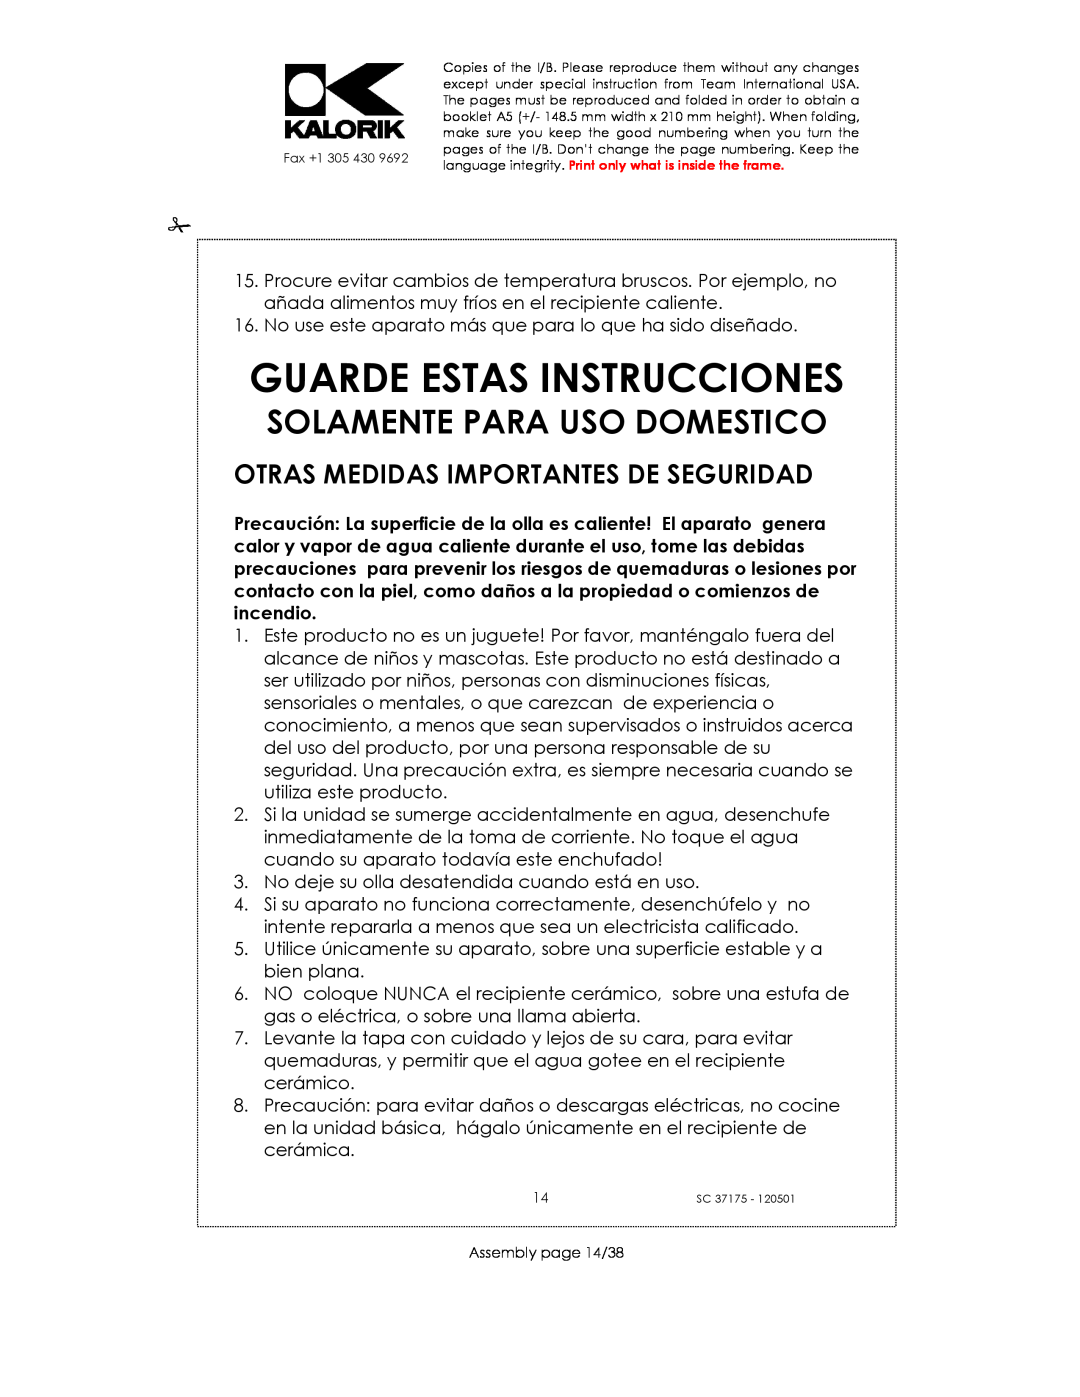 Kalorik SC 37175 manual Guarde Estas Instrucciones, Solamente Para Uso Domestico, Otras Medidas Importantes De Seguridad 